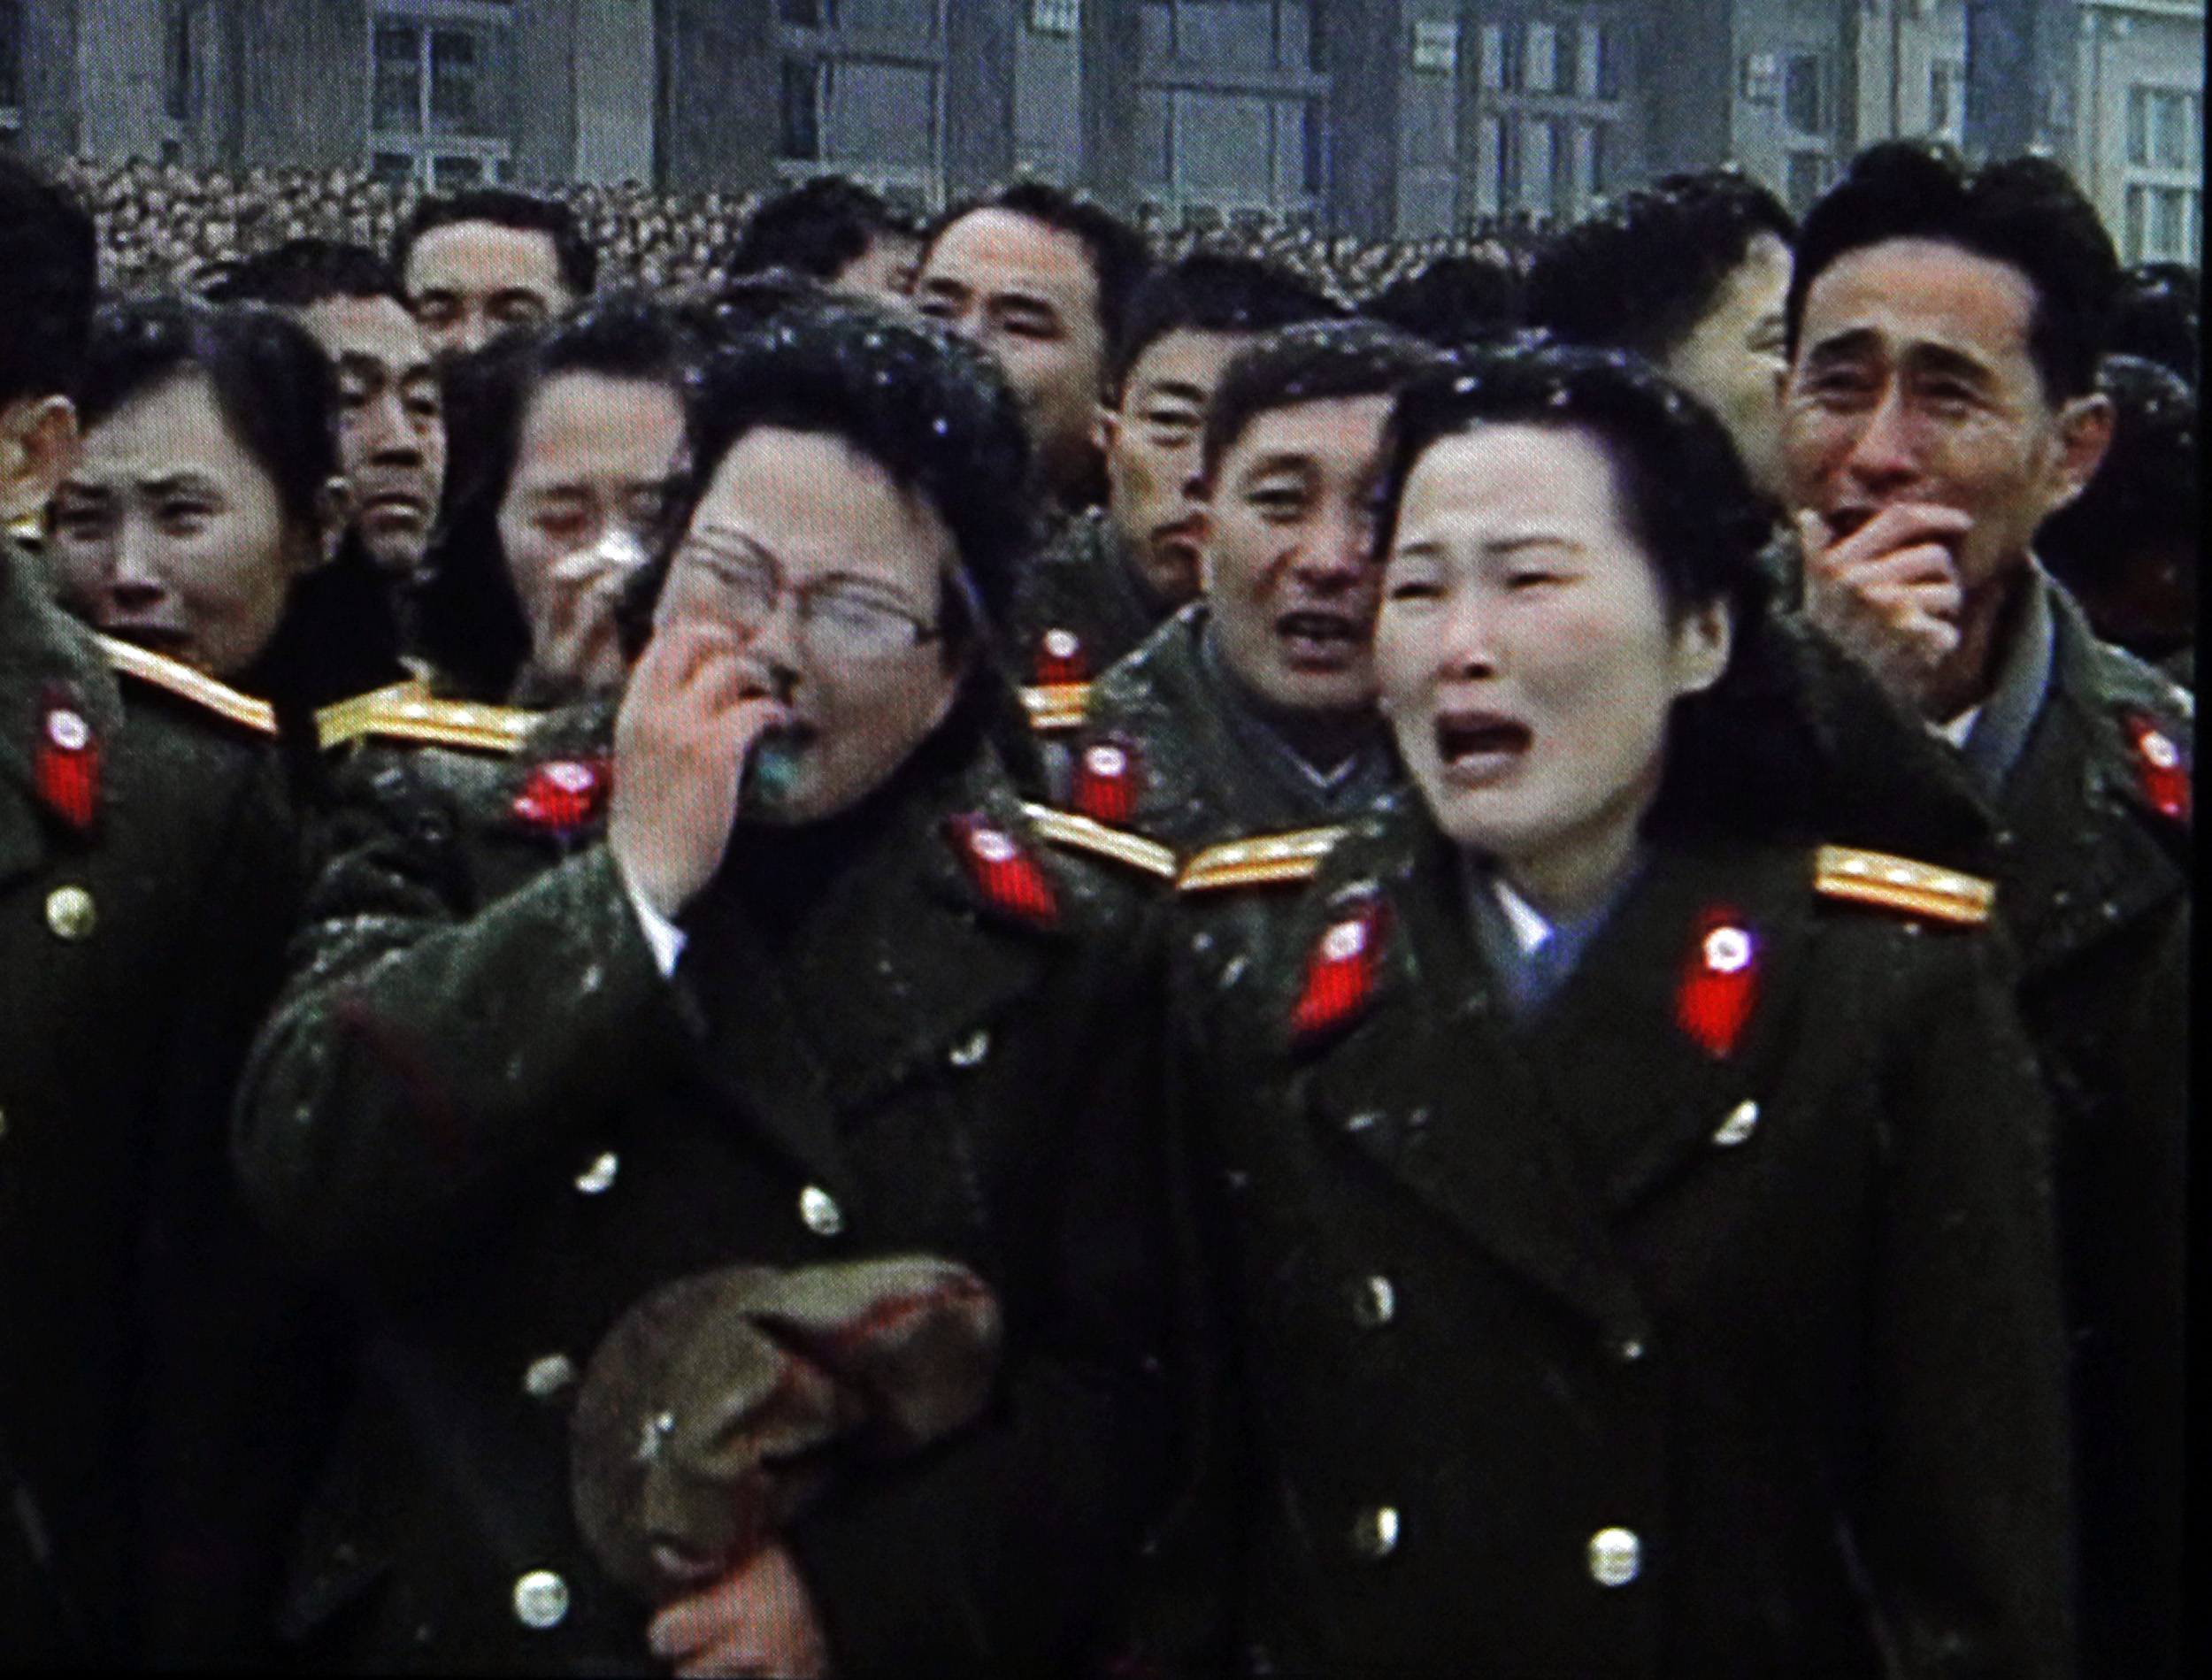 Efter elva dagars landssorg begravs nu Nordkoreas diktator Kim Jong Il. Tiotusentals nordkoreaner såg på när Kim Jong Il:s kropp eskorterades genom huvudstaden Pyongyang. Kim Jong Il styrde världens mest slutna land Nordkorea i 17 år och dog 69 år gammal.